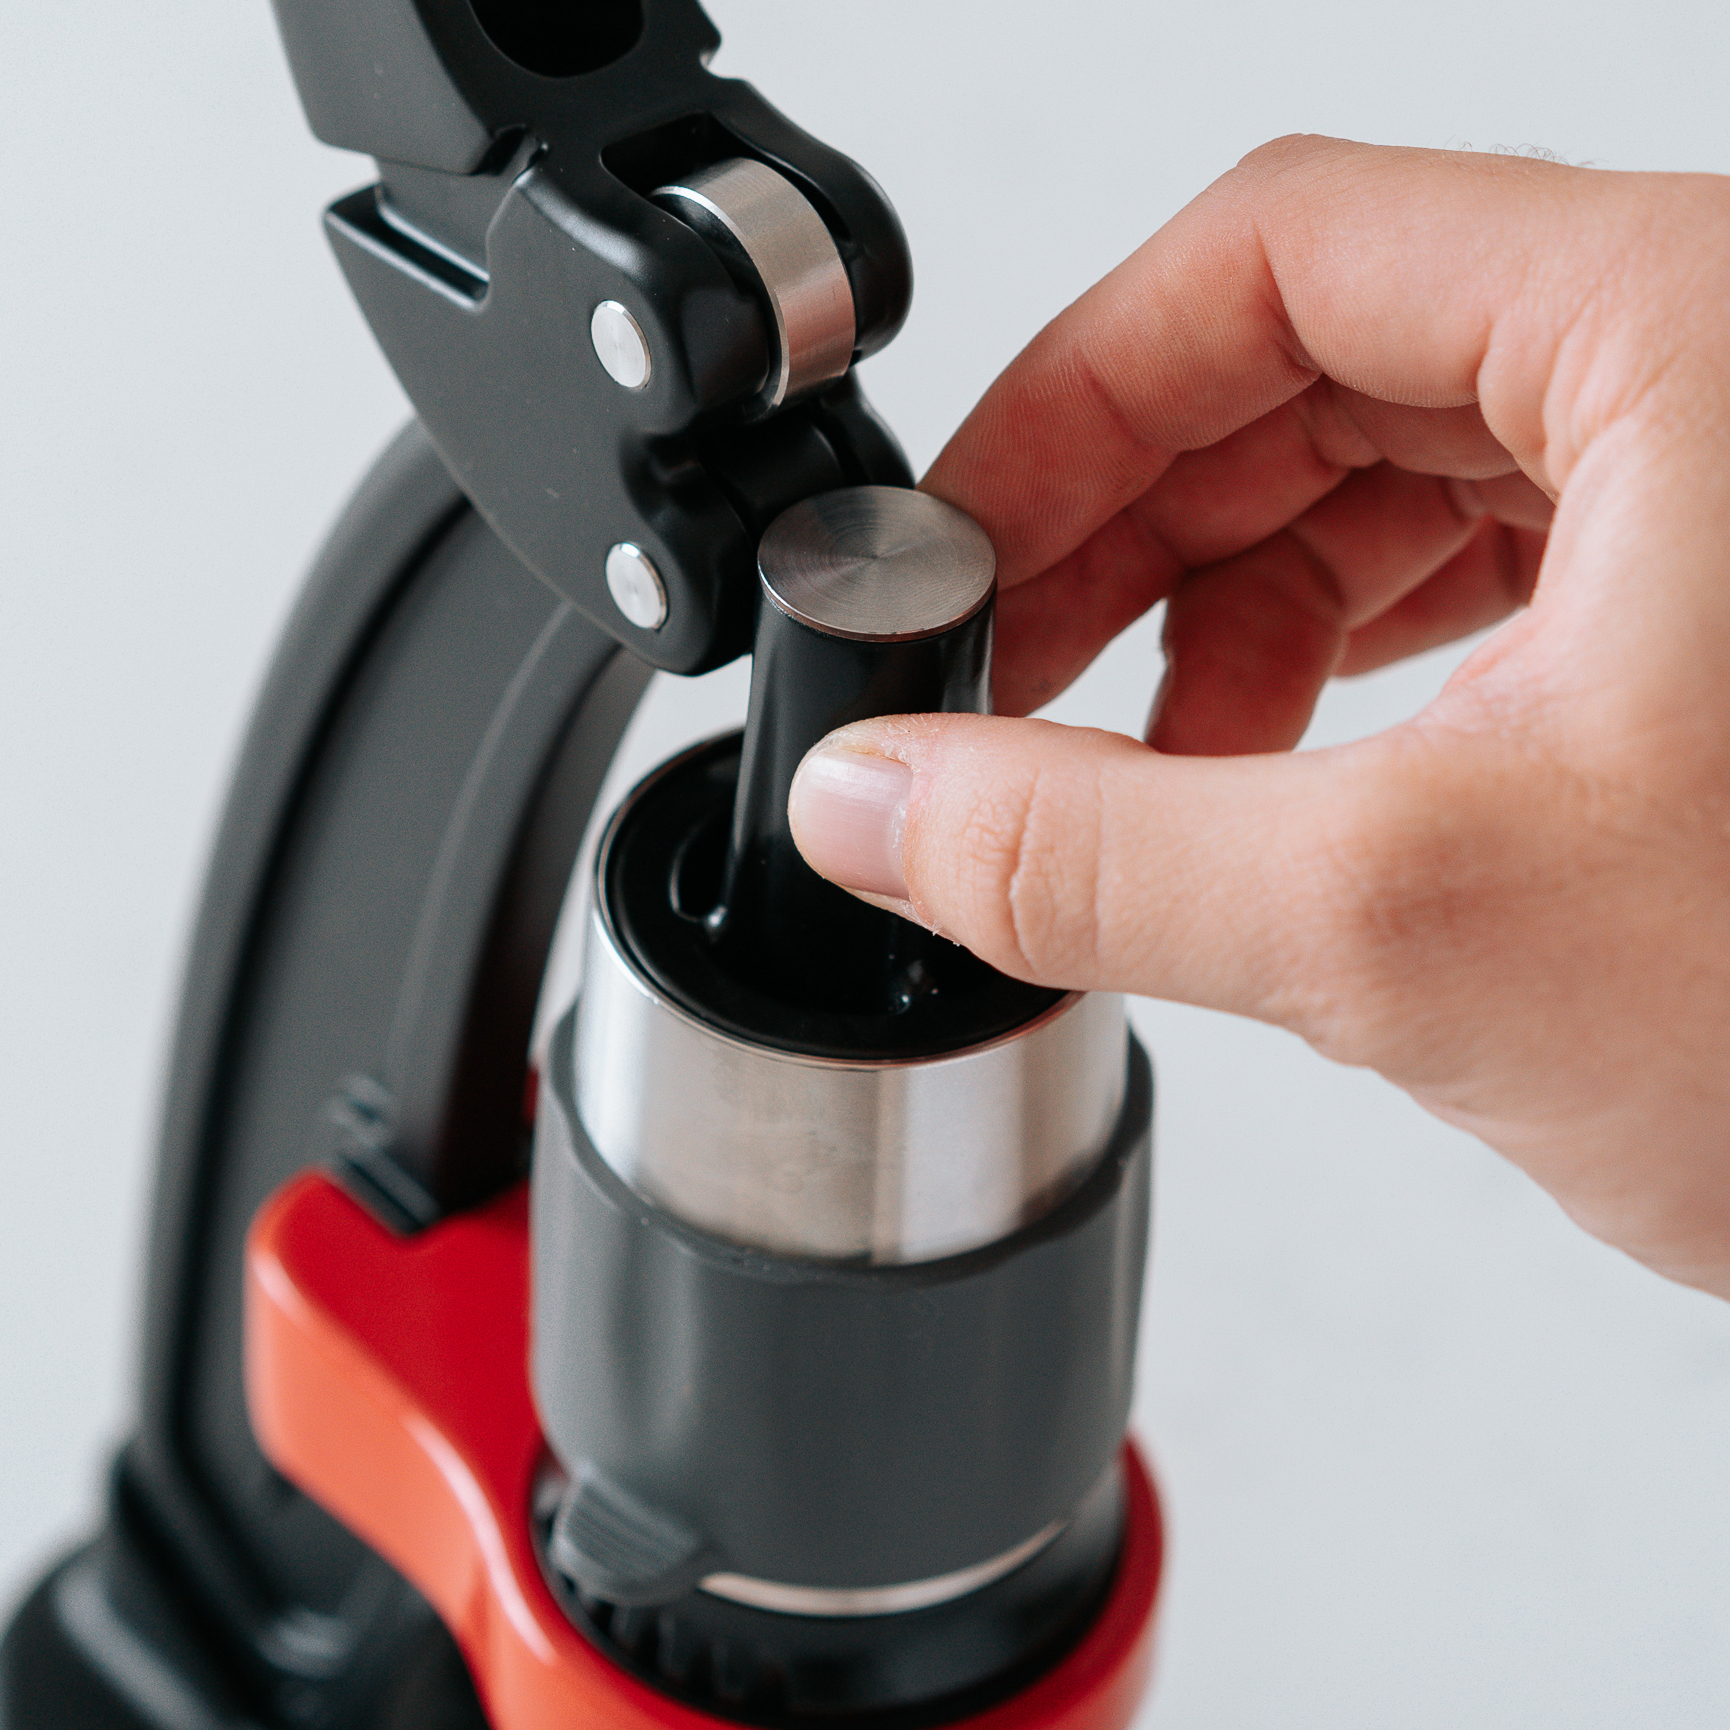  Flair Espresso Maker - Classic: All manual lever